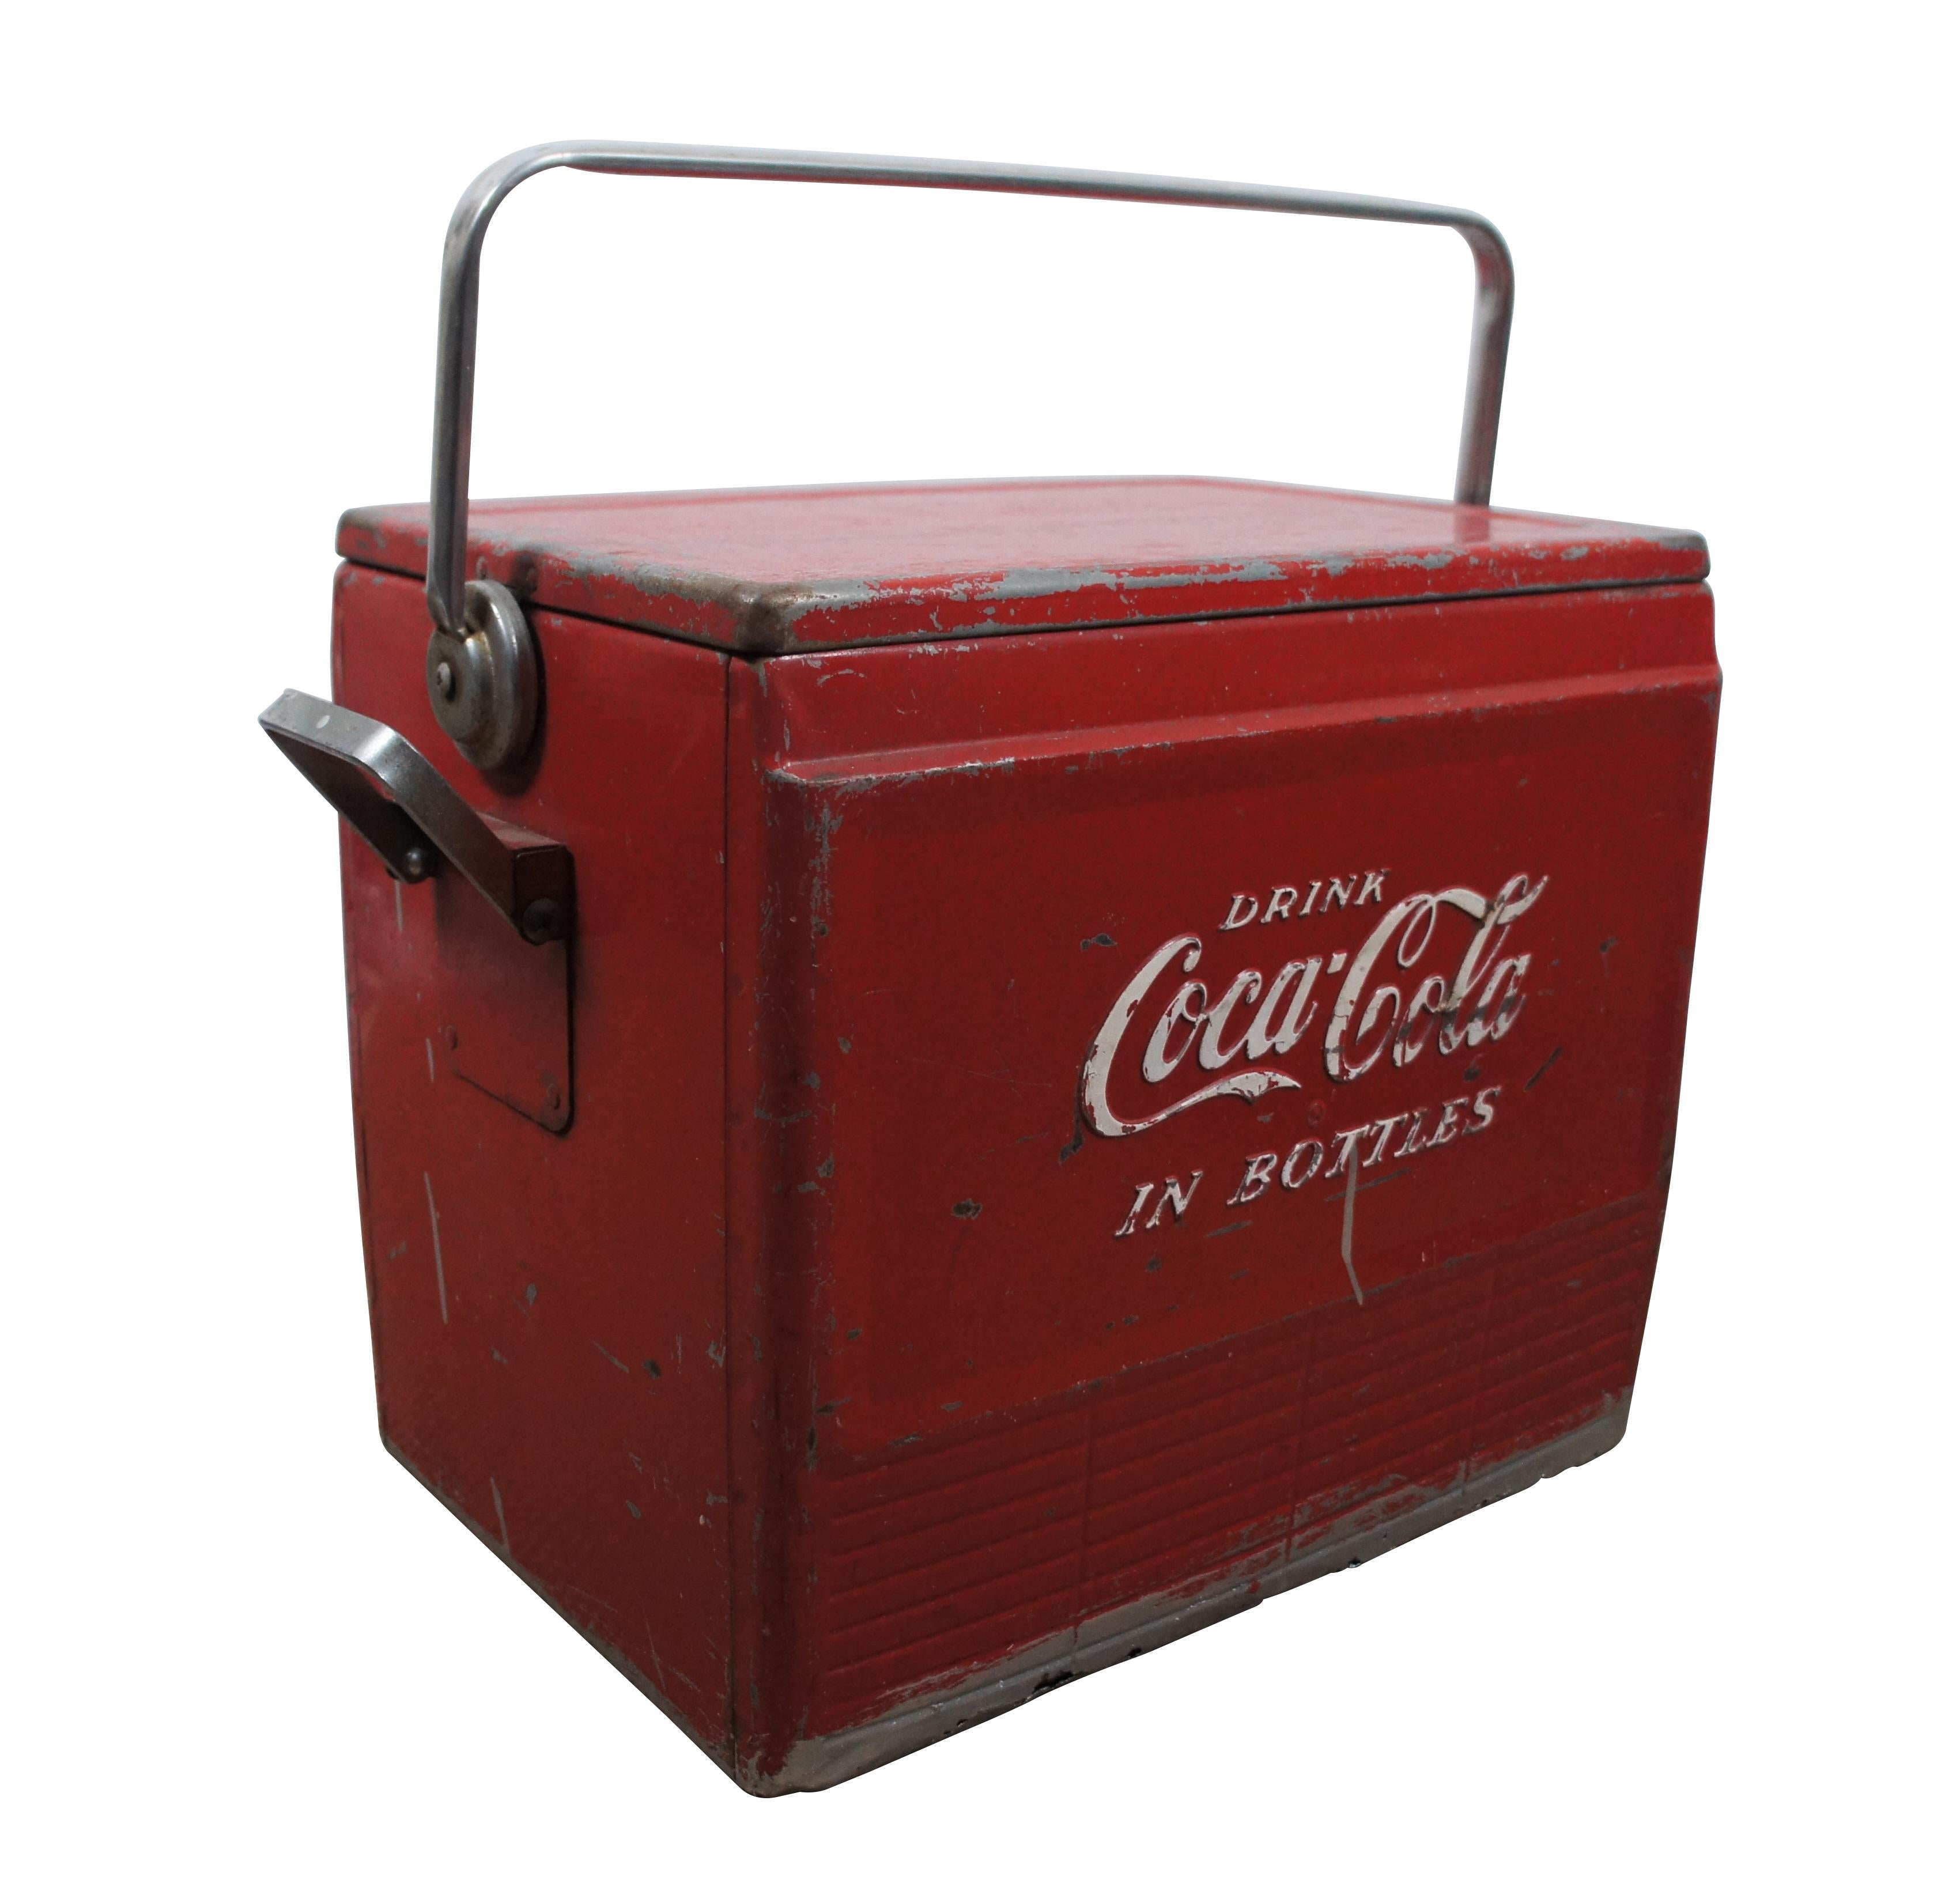 Roter Coca-Cola-Getränkekühler aus Metall im Vintage-Stil der 1950er Jahre mit Tablett-Einsatz, Abfluss und Flaschenöffner.  Trinken Sie Coca Cola in Flaschen.

Abmessungen:
20